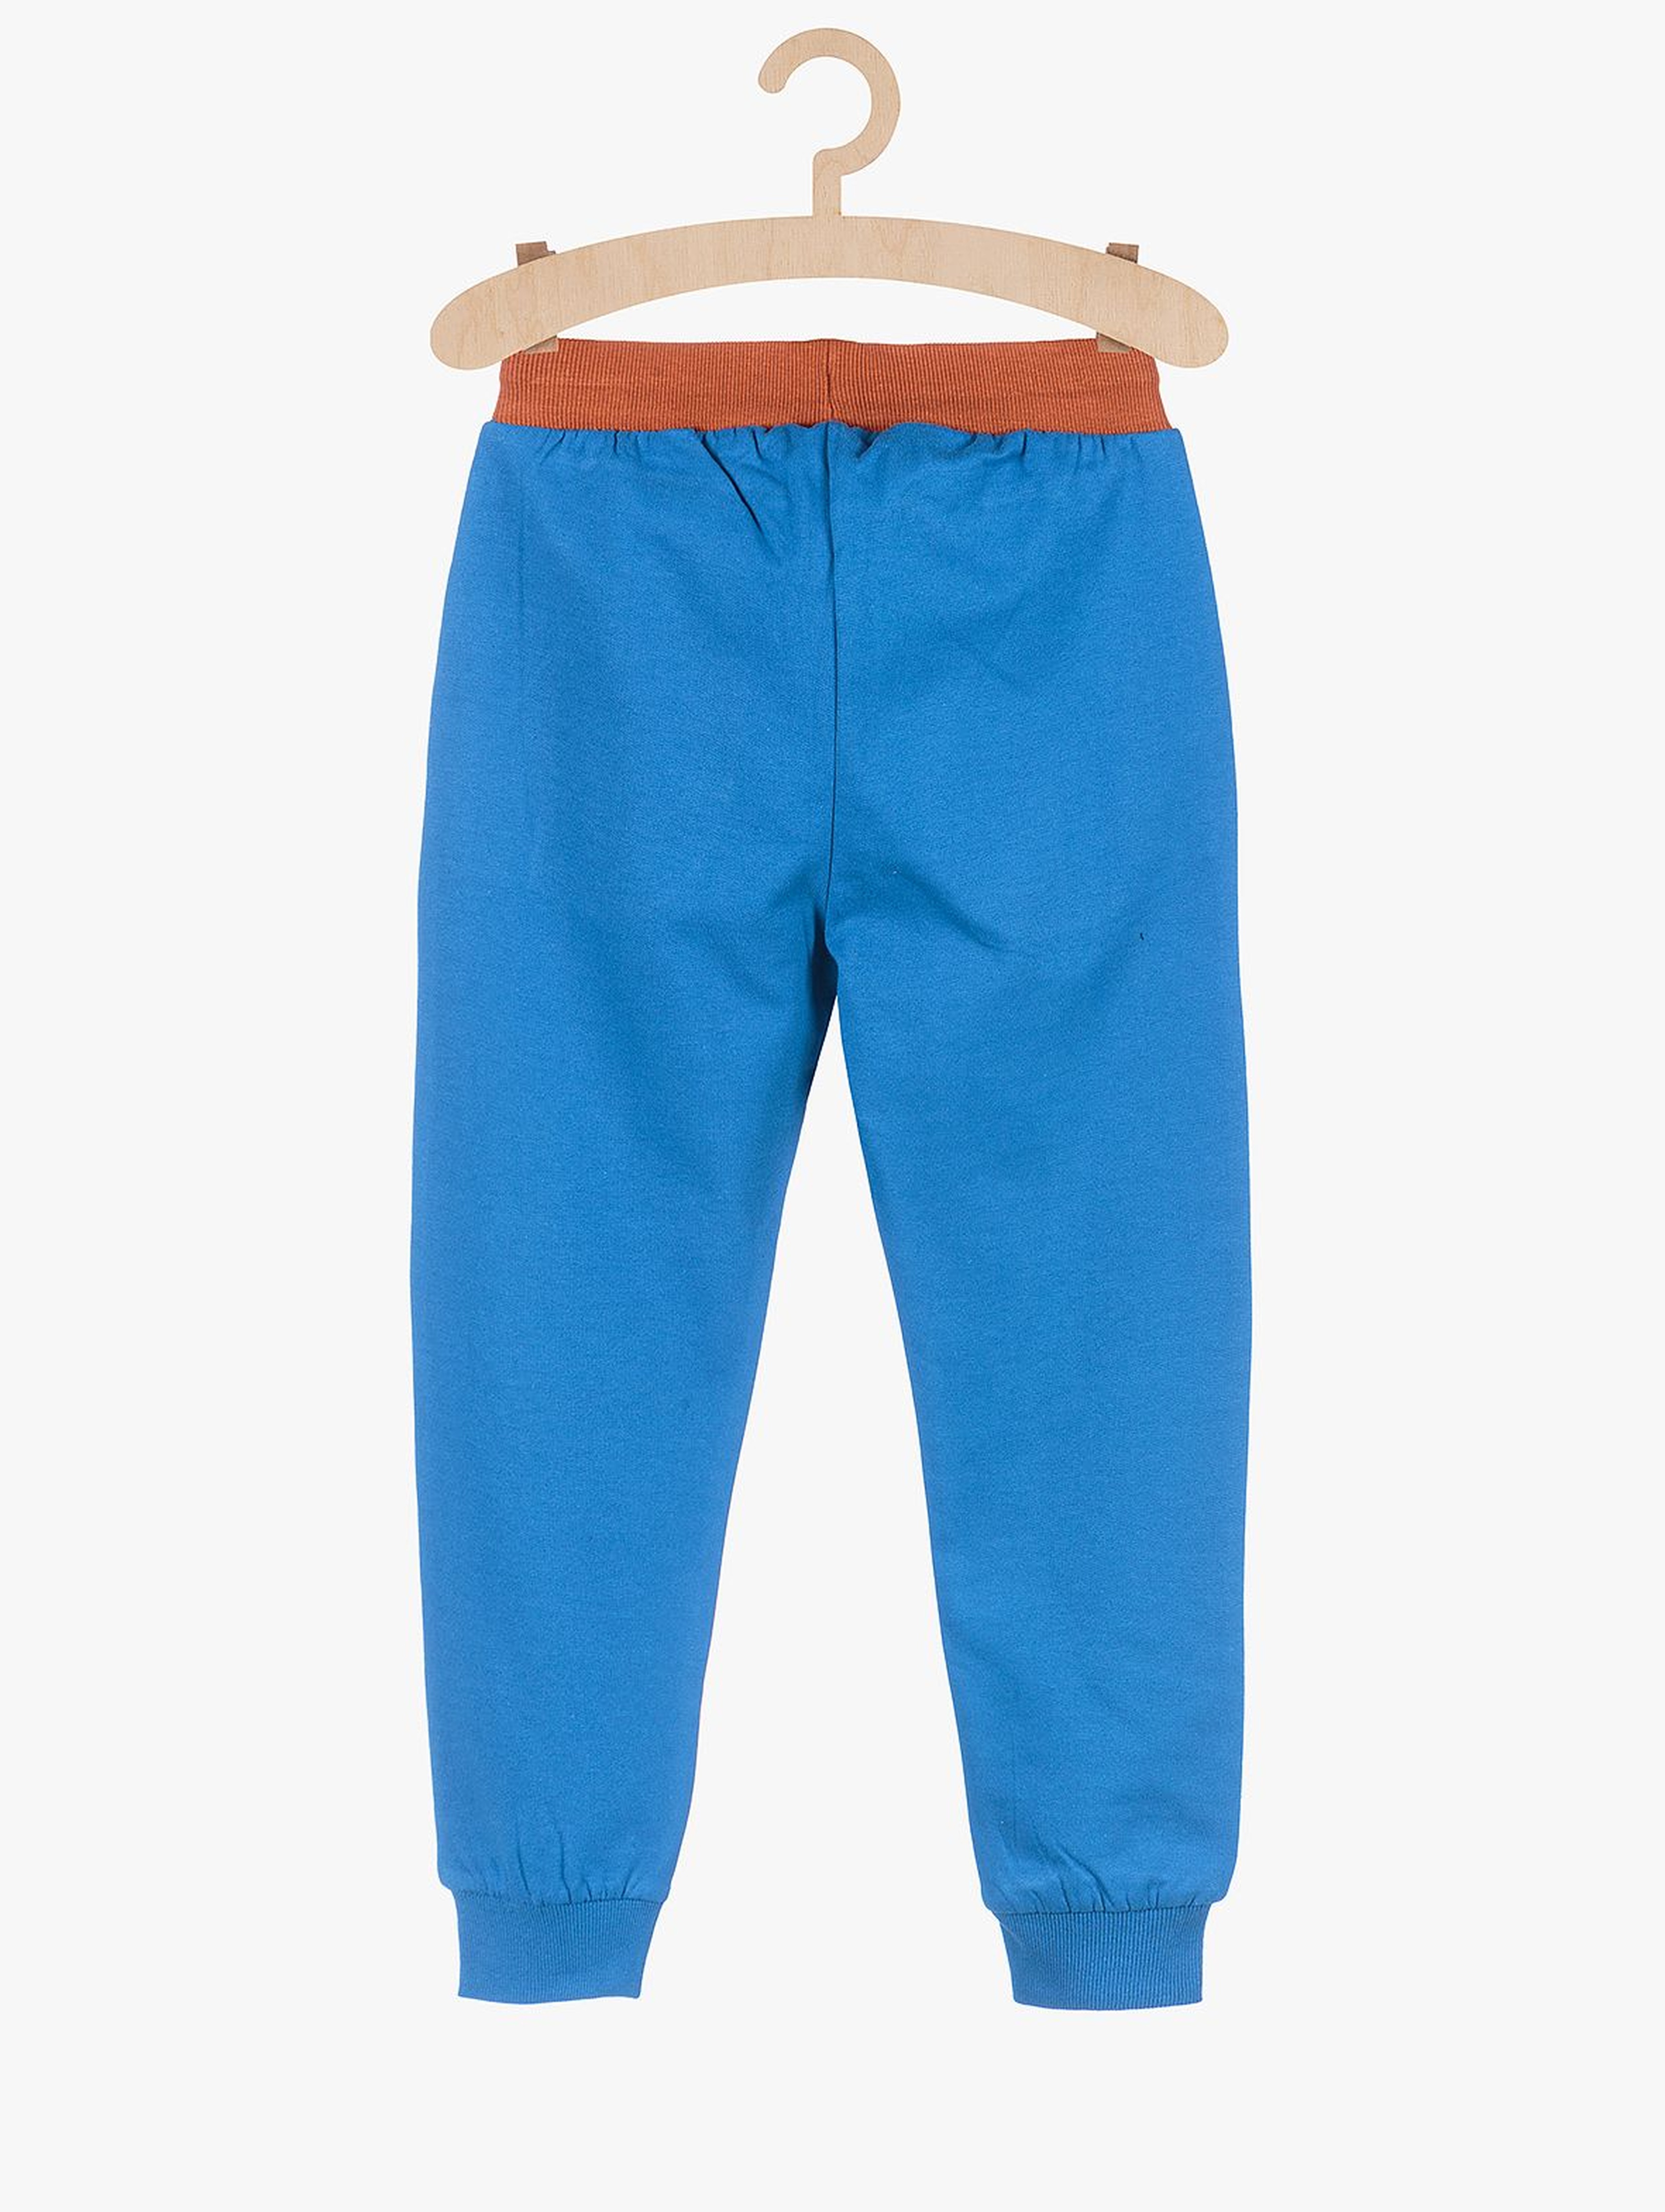 Spodnie dresowe dla chłopca- niebieskie